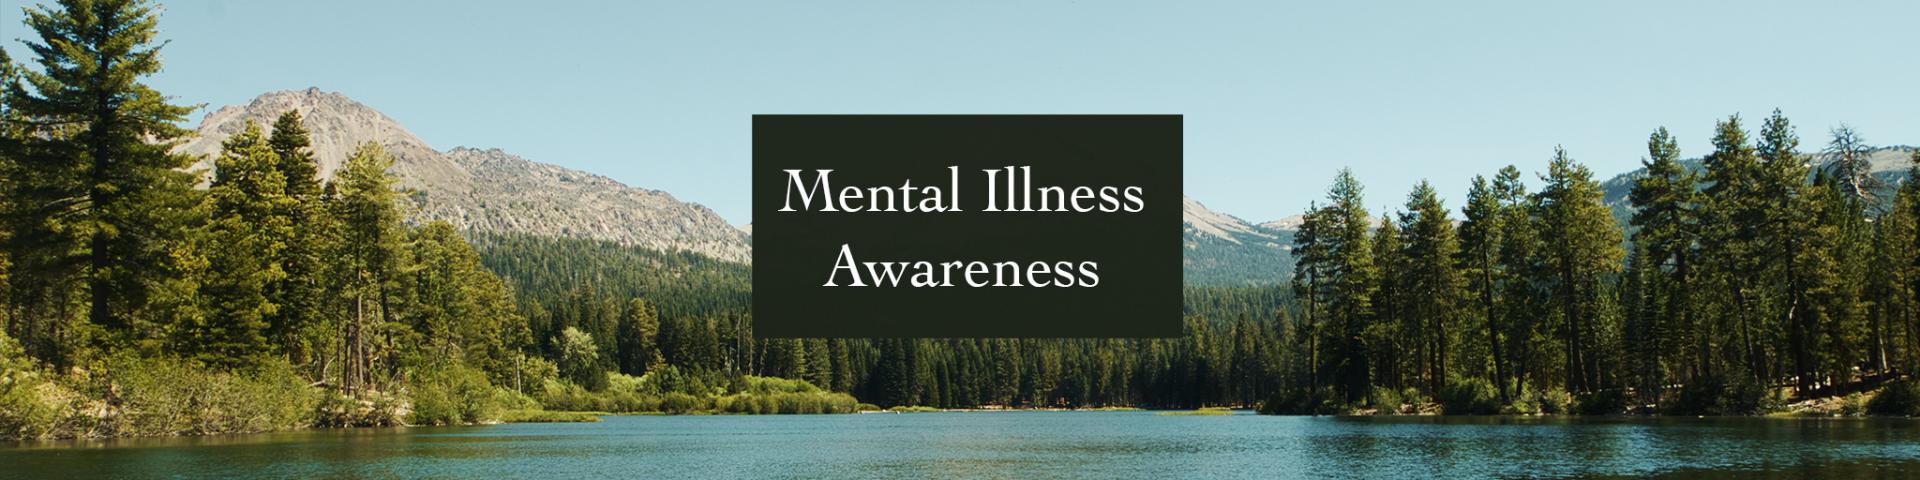 Mental Illness Awareness 